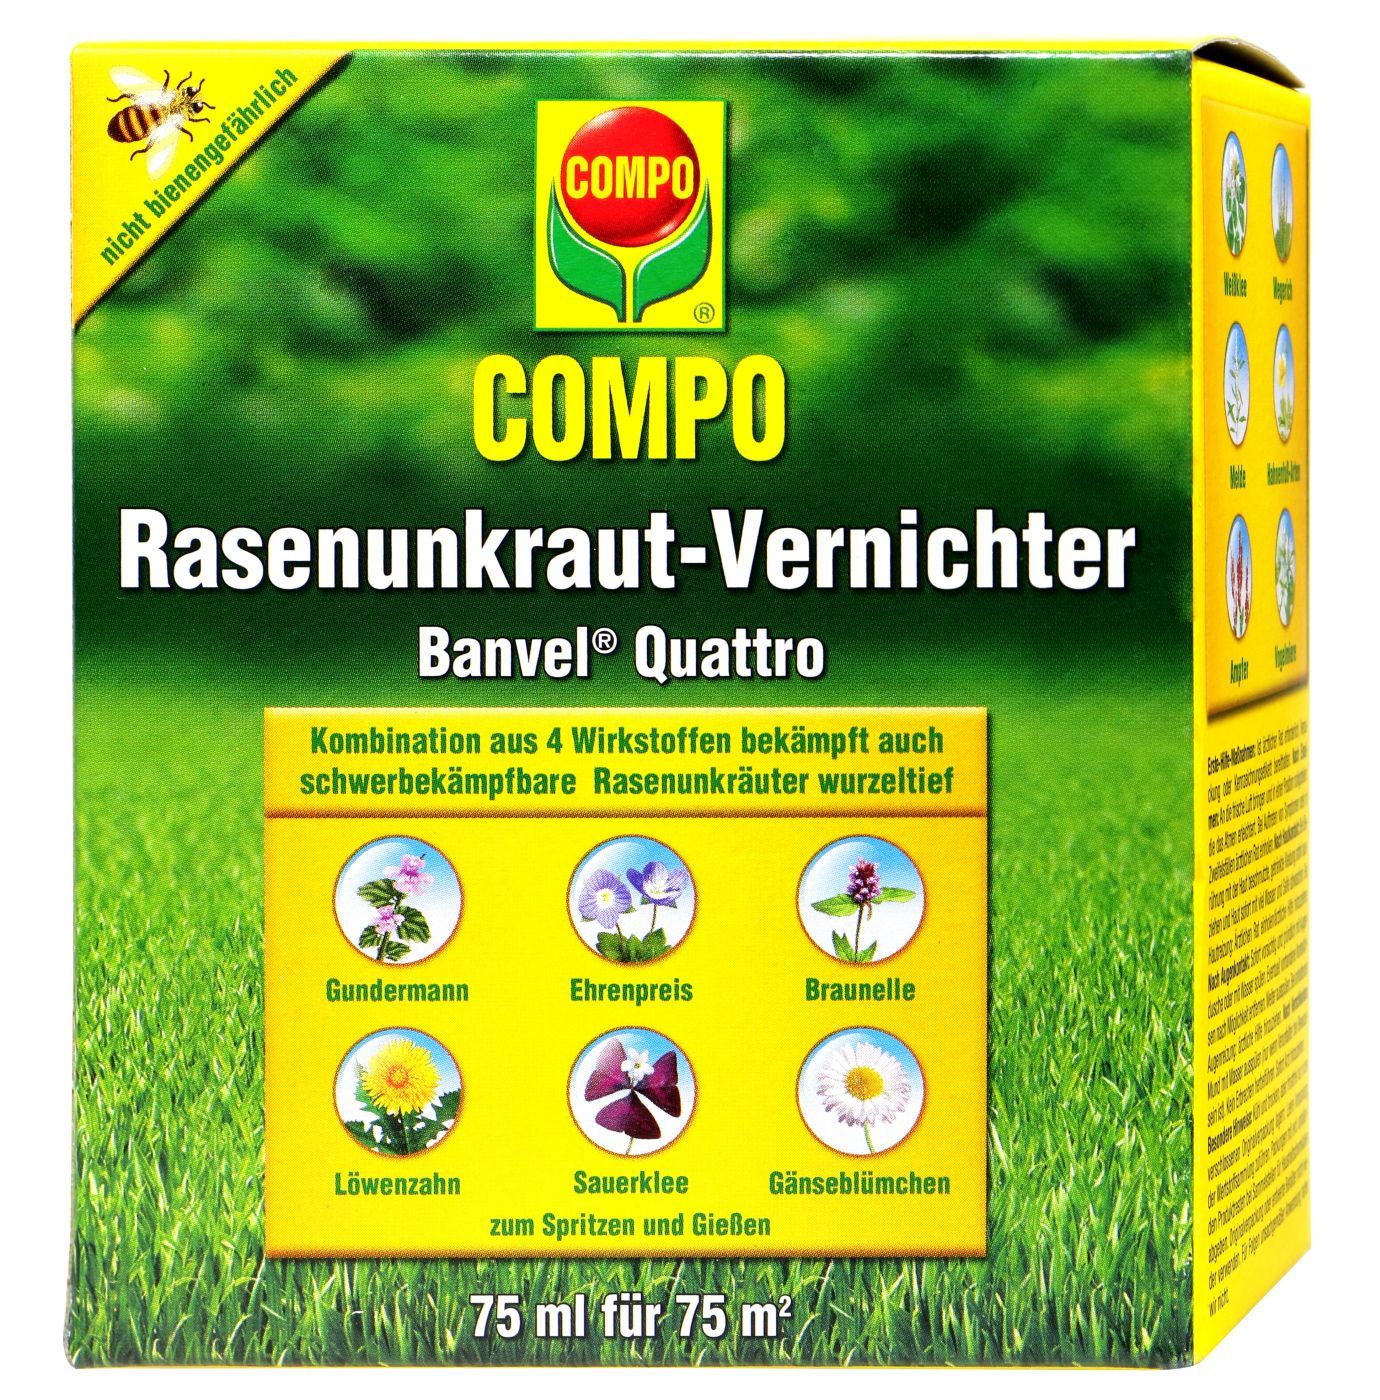 Compo Rasenunkraut-Vernichter Banvel Quattro - 75 ml